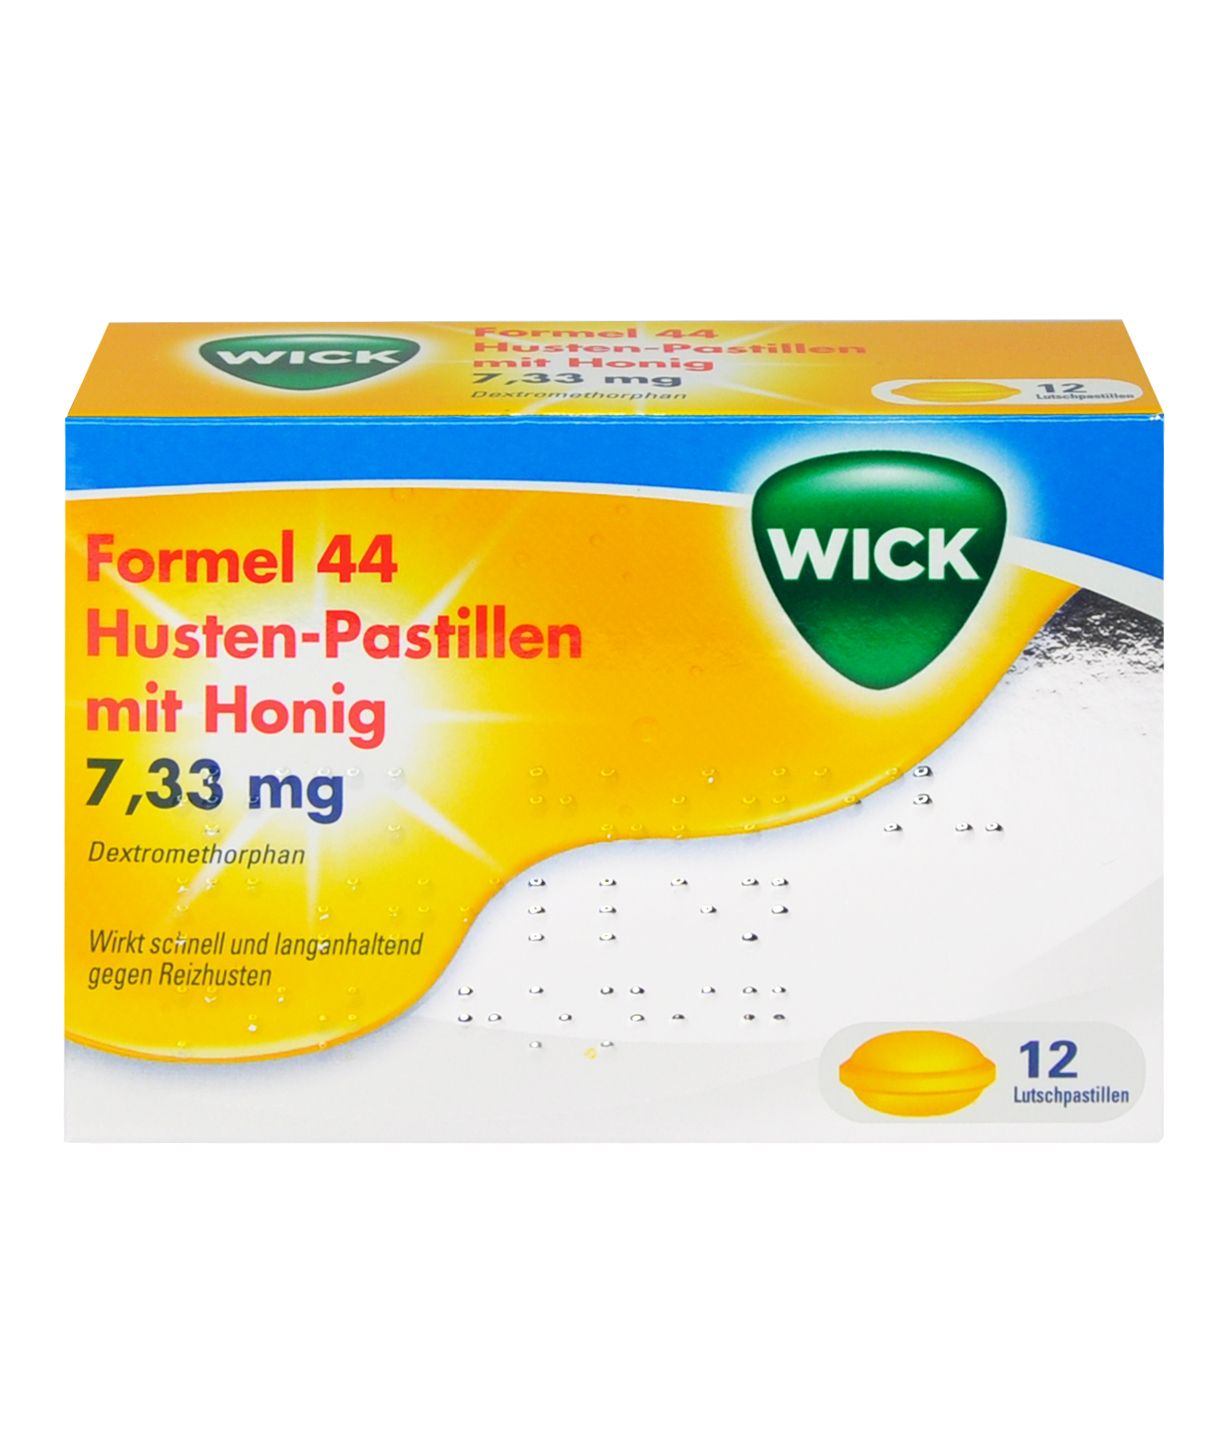 Abbildung WICK Formel 44 Husten-Pastillen mit Honig 7,33 mg